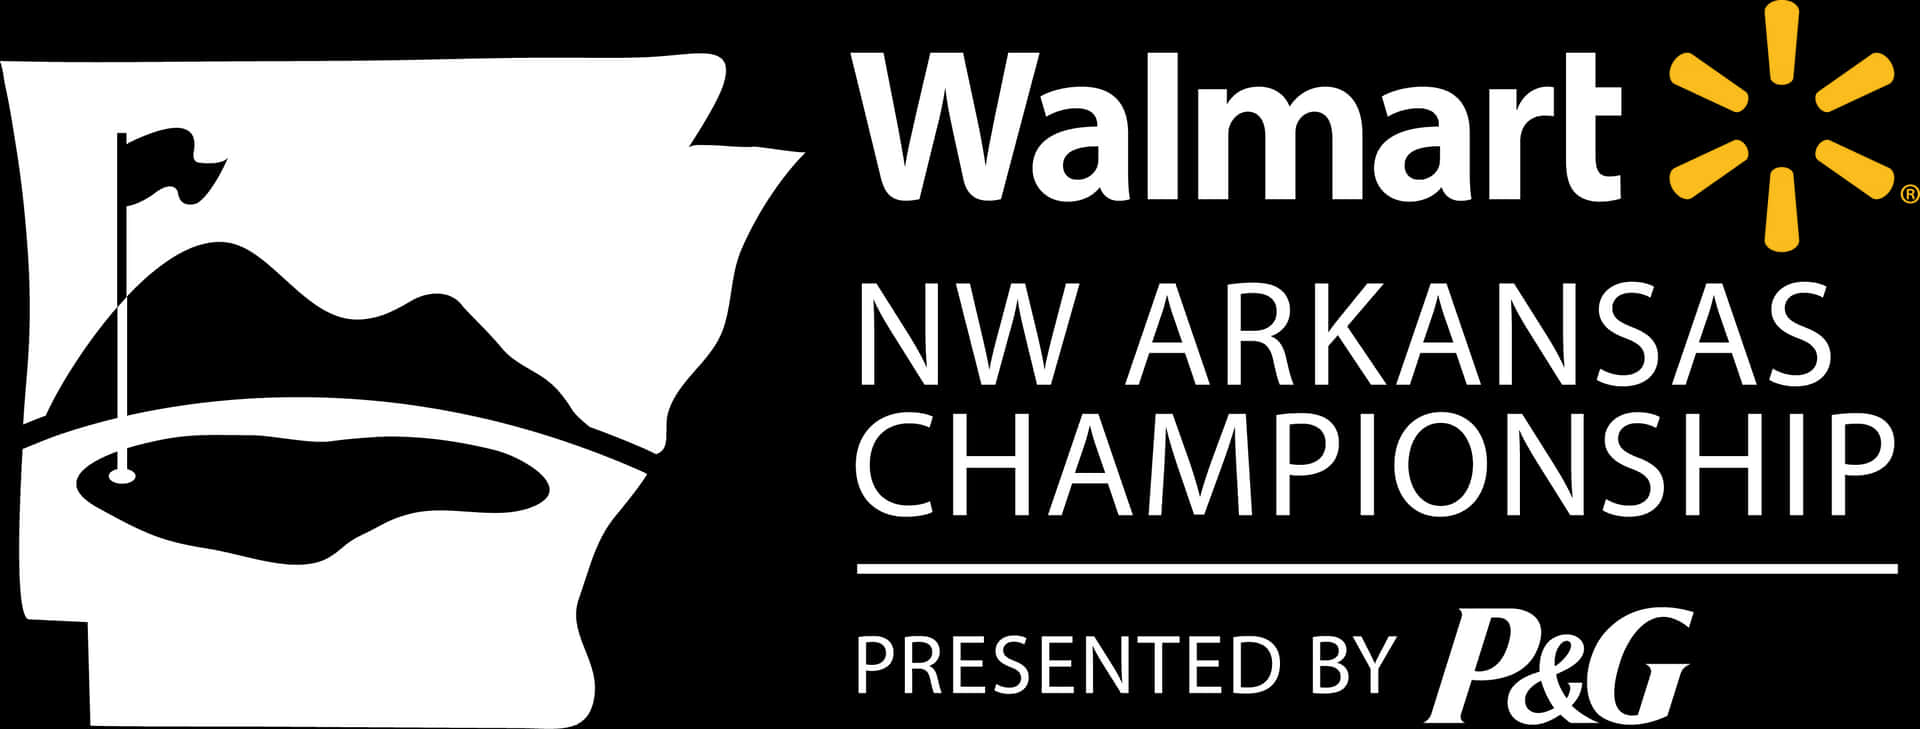 Walmart N W Arkansas Championship Logo PNG image